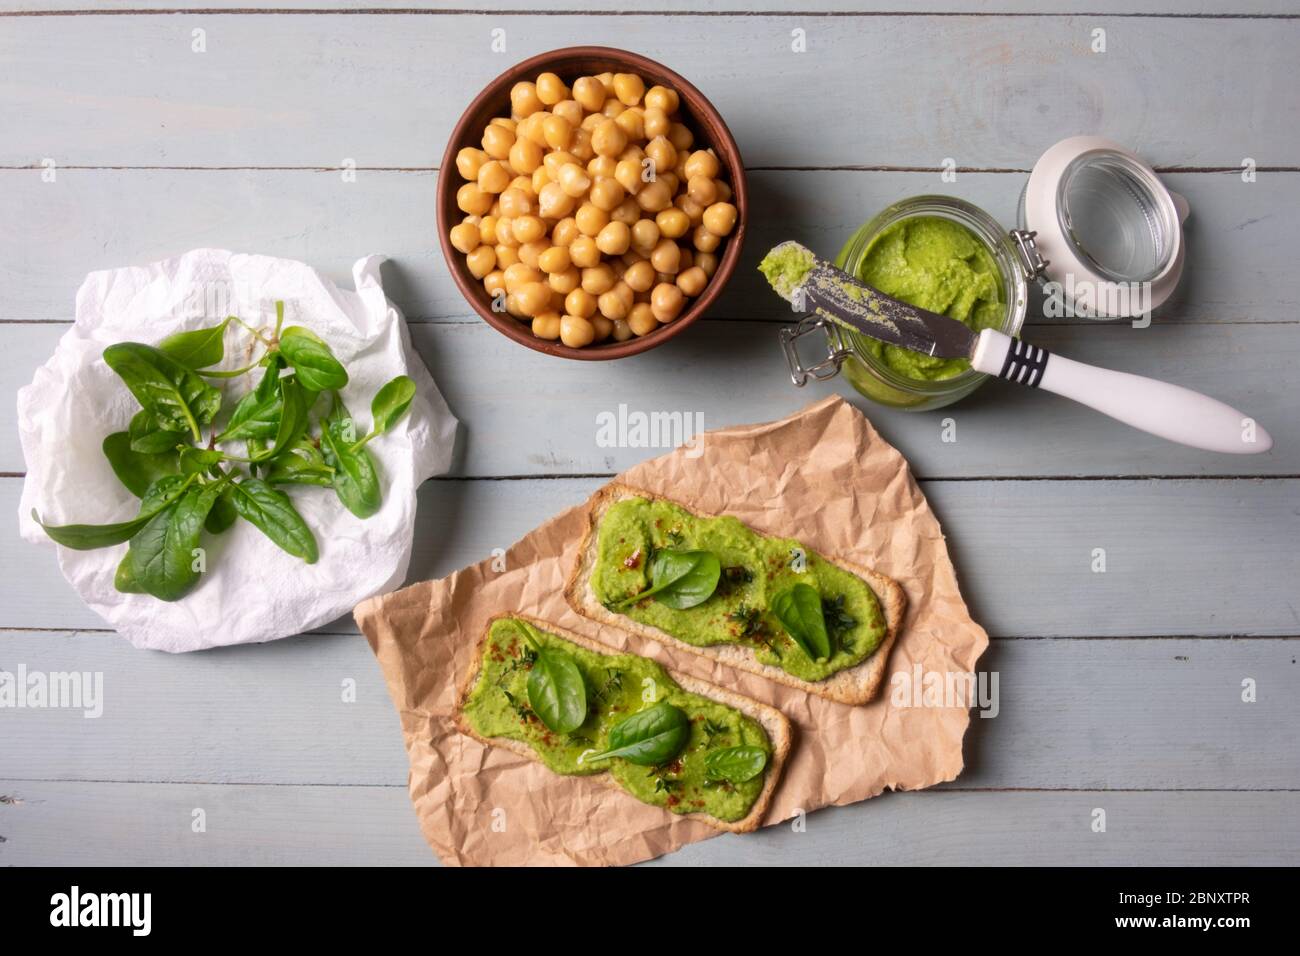 Due cracker con humus di spinaci verdi su tavola di legno. Disposizione piatta. Concetto di hummus. Fotografia di cibo Foto Stock